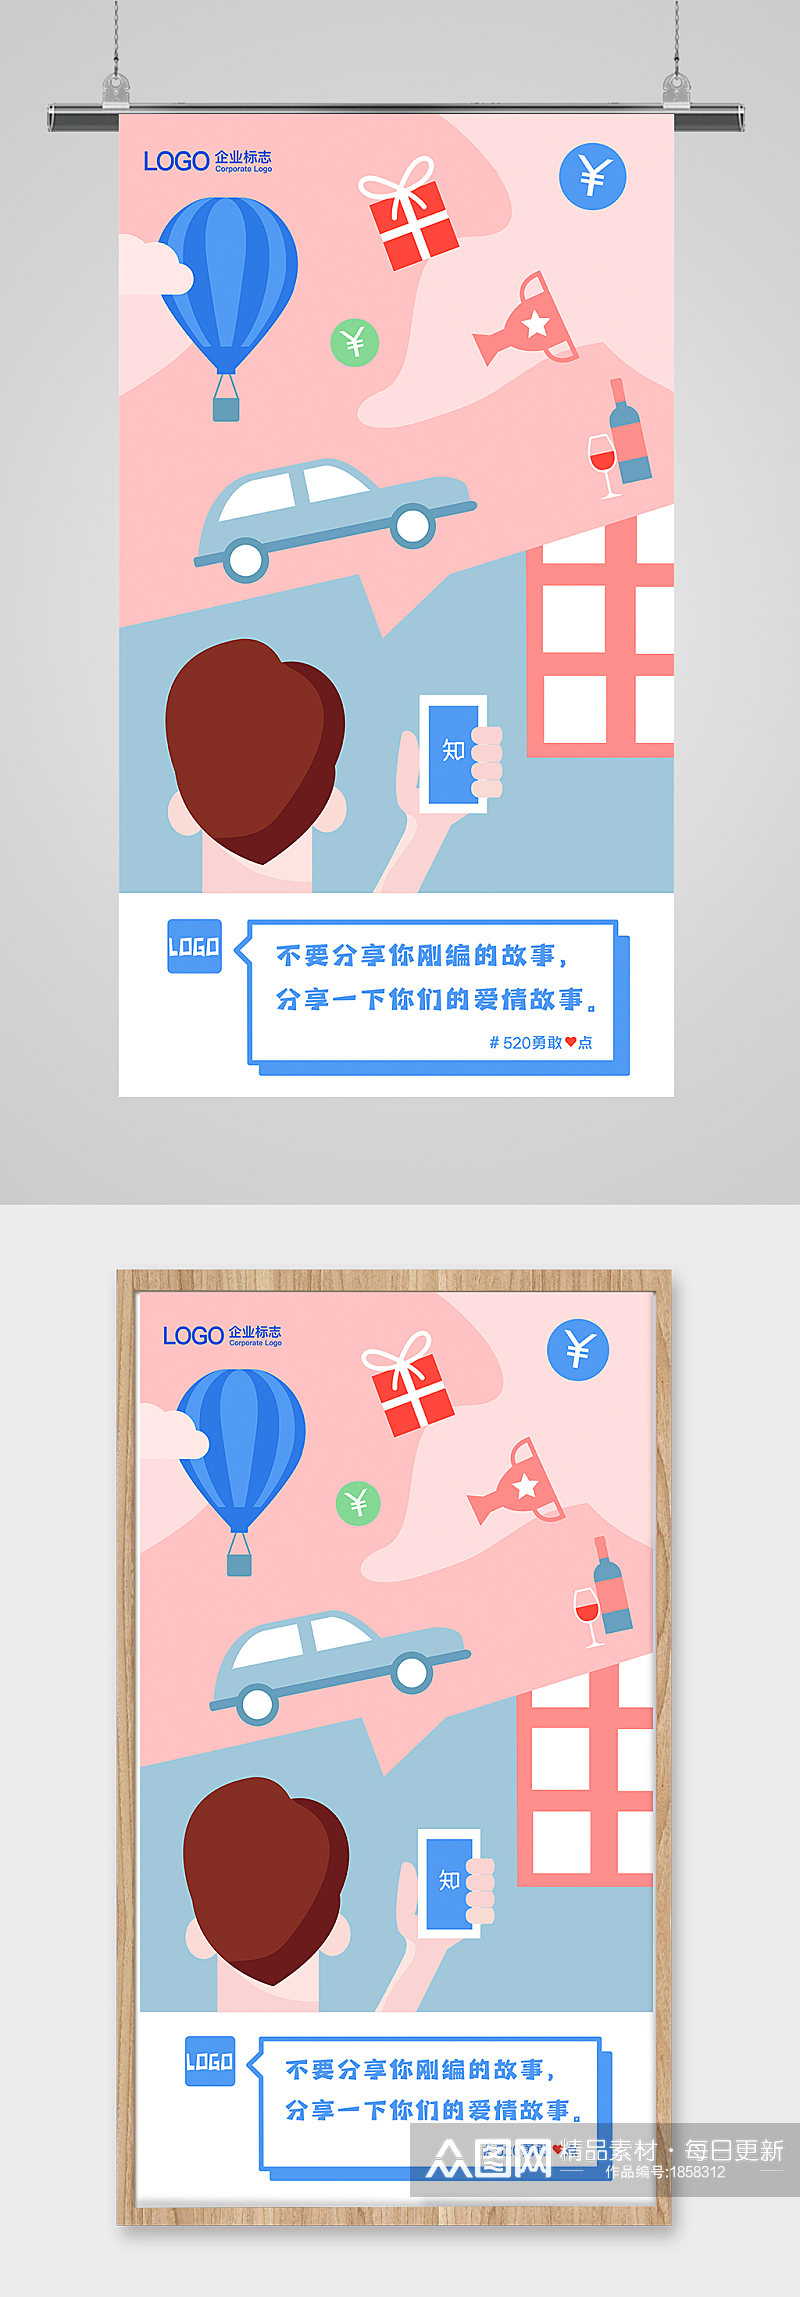 520情人节插画海报设计网上购物冲浪素材